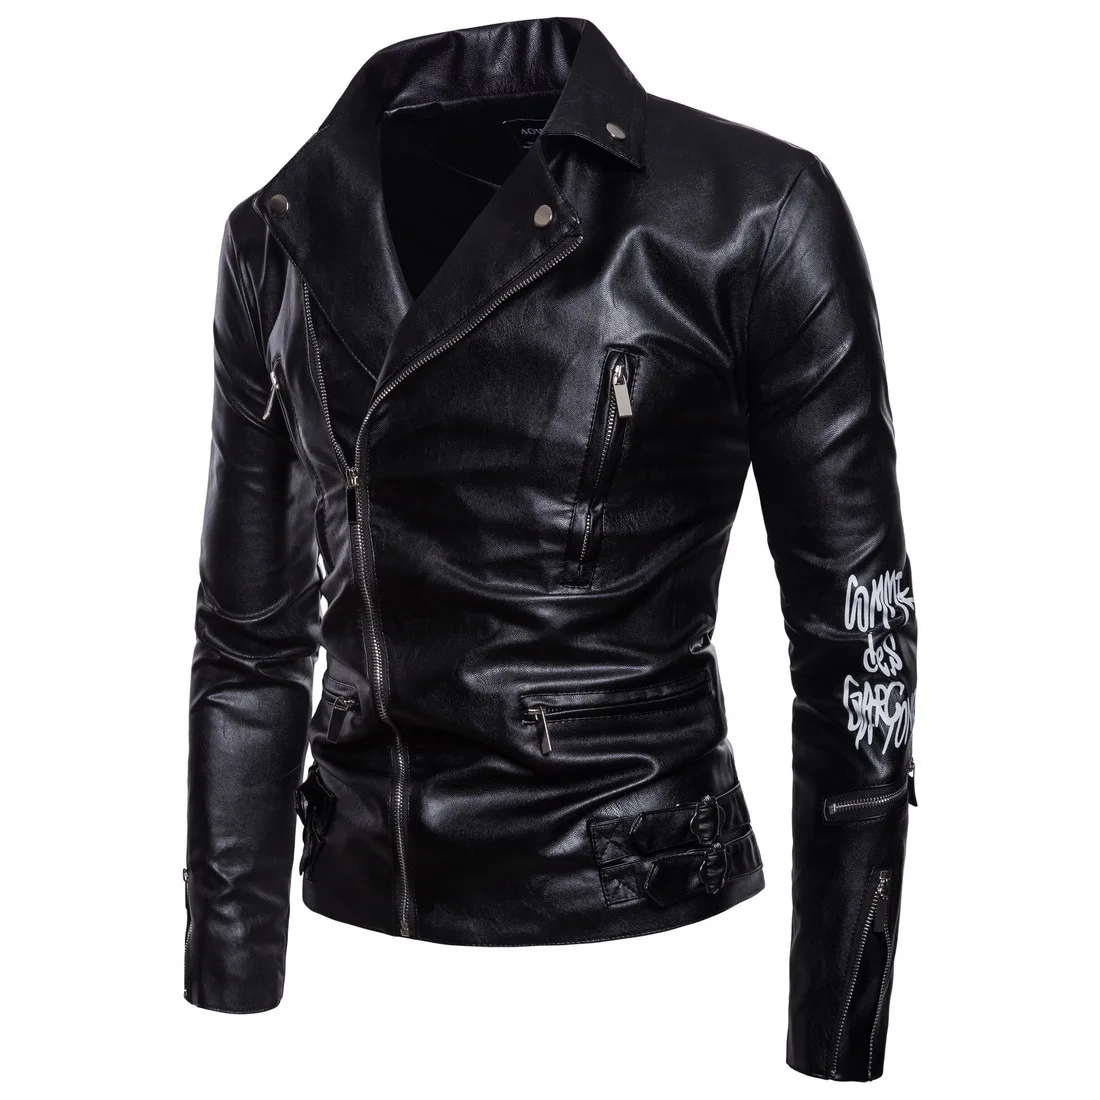 Кожаная мужская куртка в европейском стиле, модель года, мотоциклетная куртка-бомбер, одежда с принтом Доры и цепочкой, облегающая мужская куртка в стиле панк, кожаная куртка-Халли